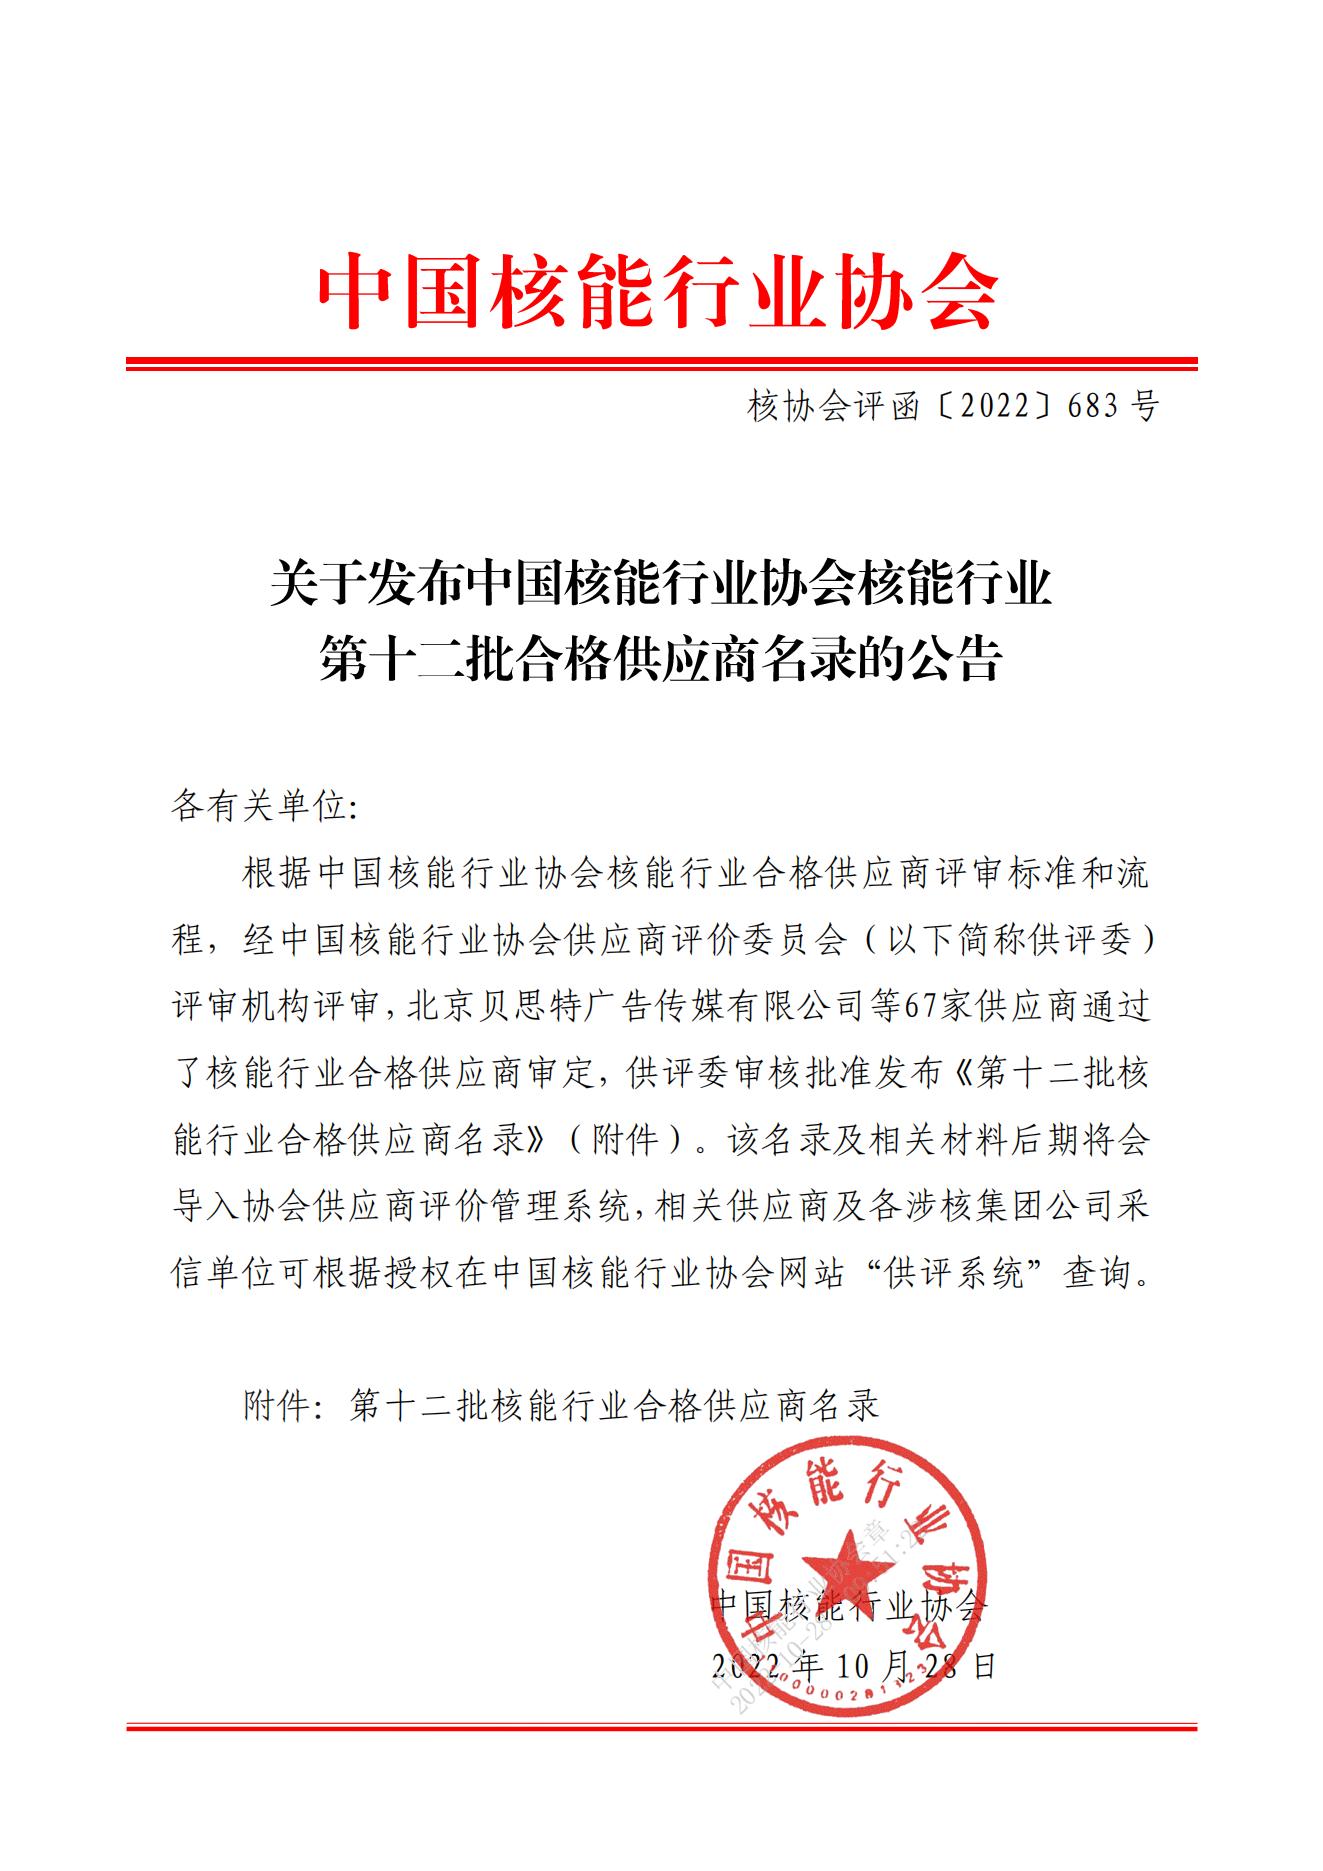 关于发布中国核能行业协会核能行业第十二批合格供应商名录的公告_00.jpg